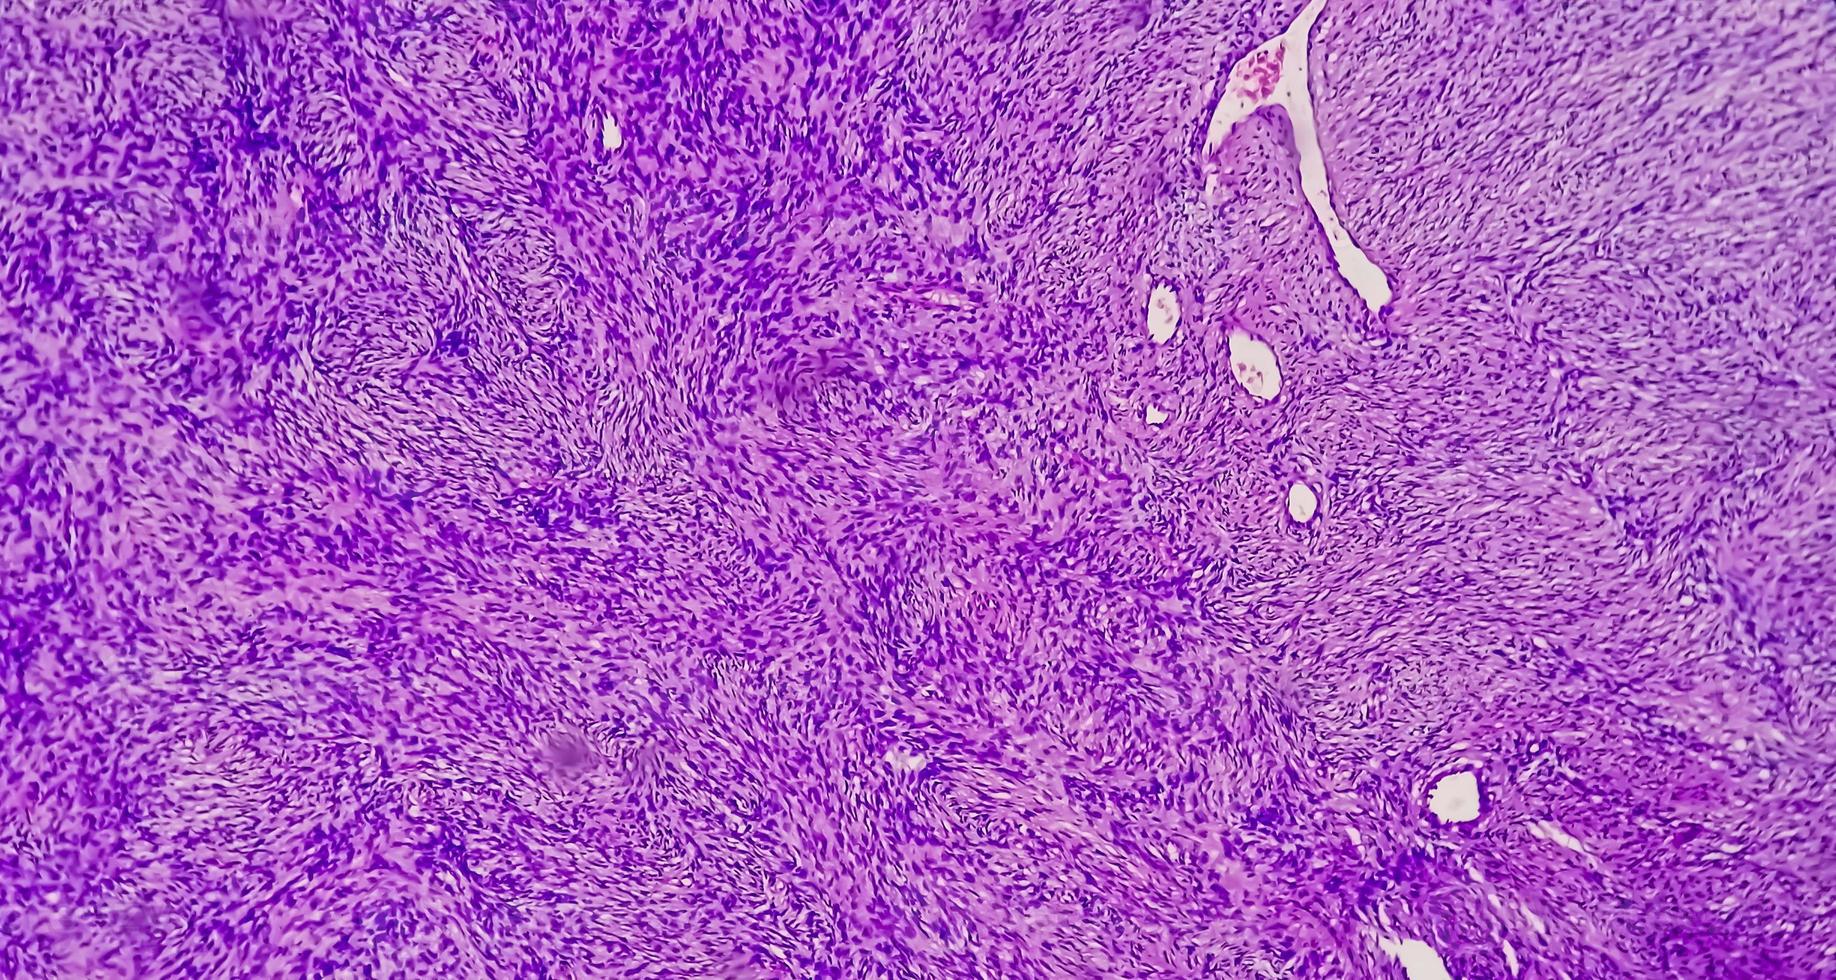 fotomicrografia de um schwannoma, um tumor benigno de tecidos moles da bainha do nervo periférico. foto